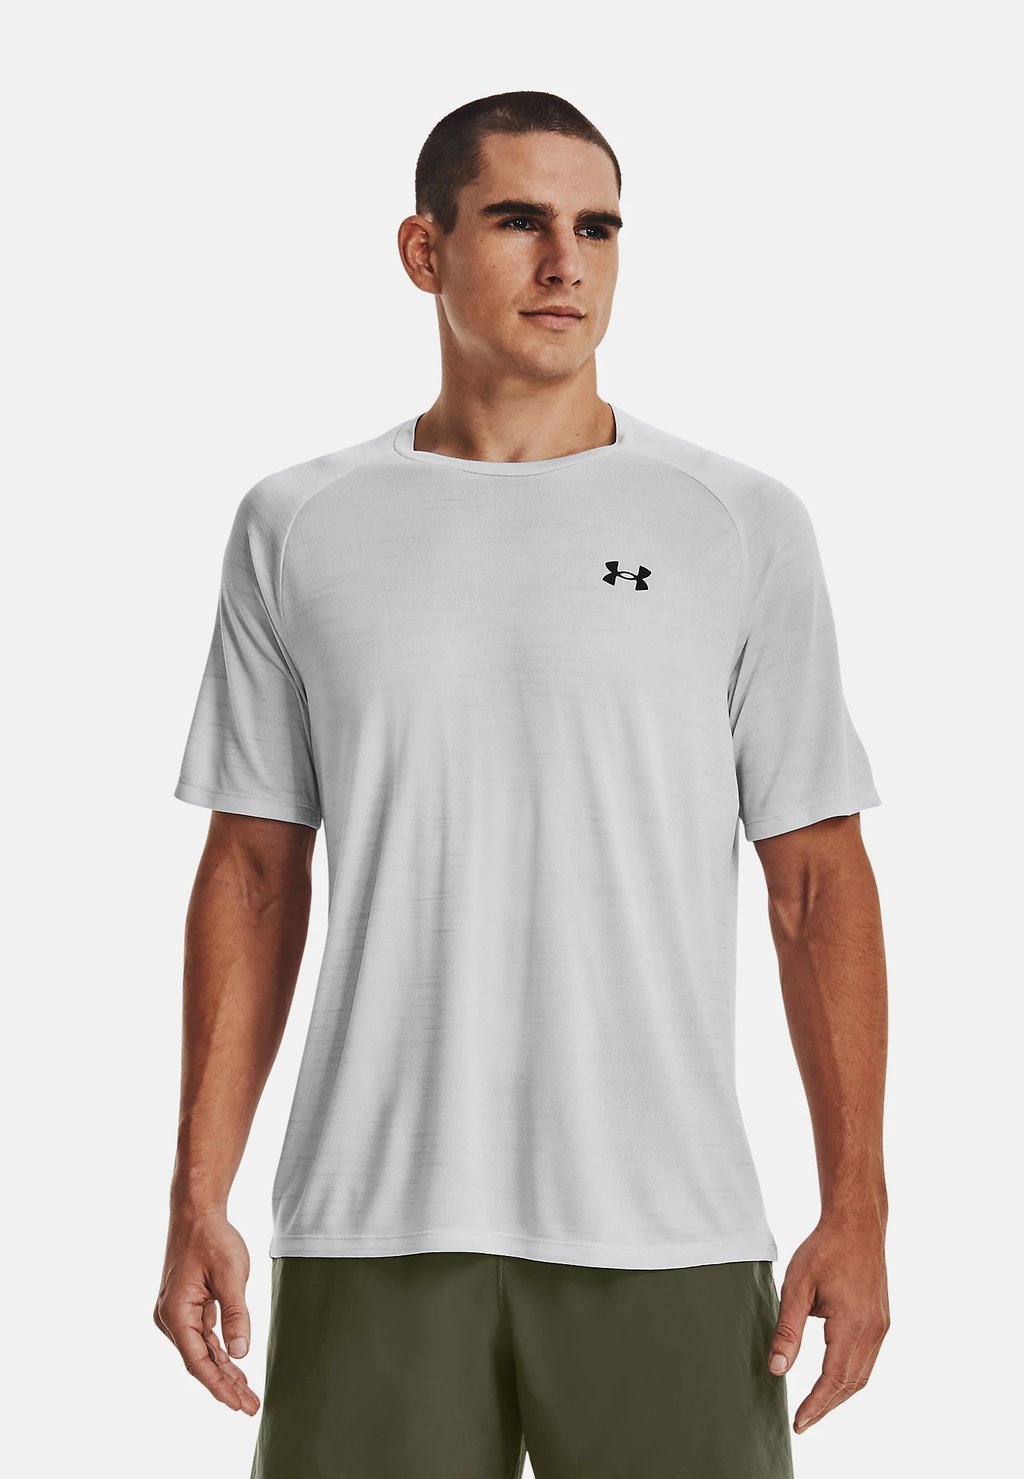 Спортивная футболка TIGER TECH Under Armour, гало-серый/черный